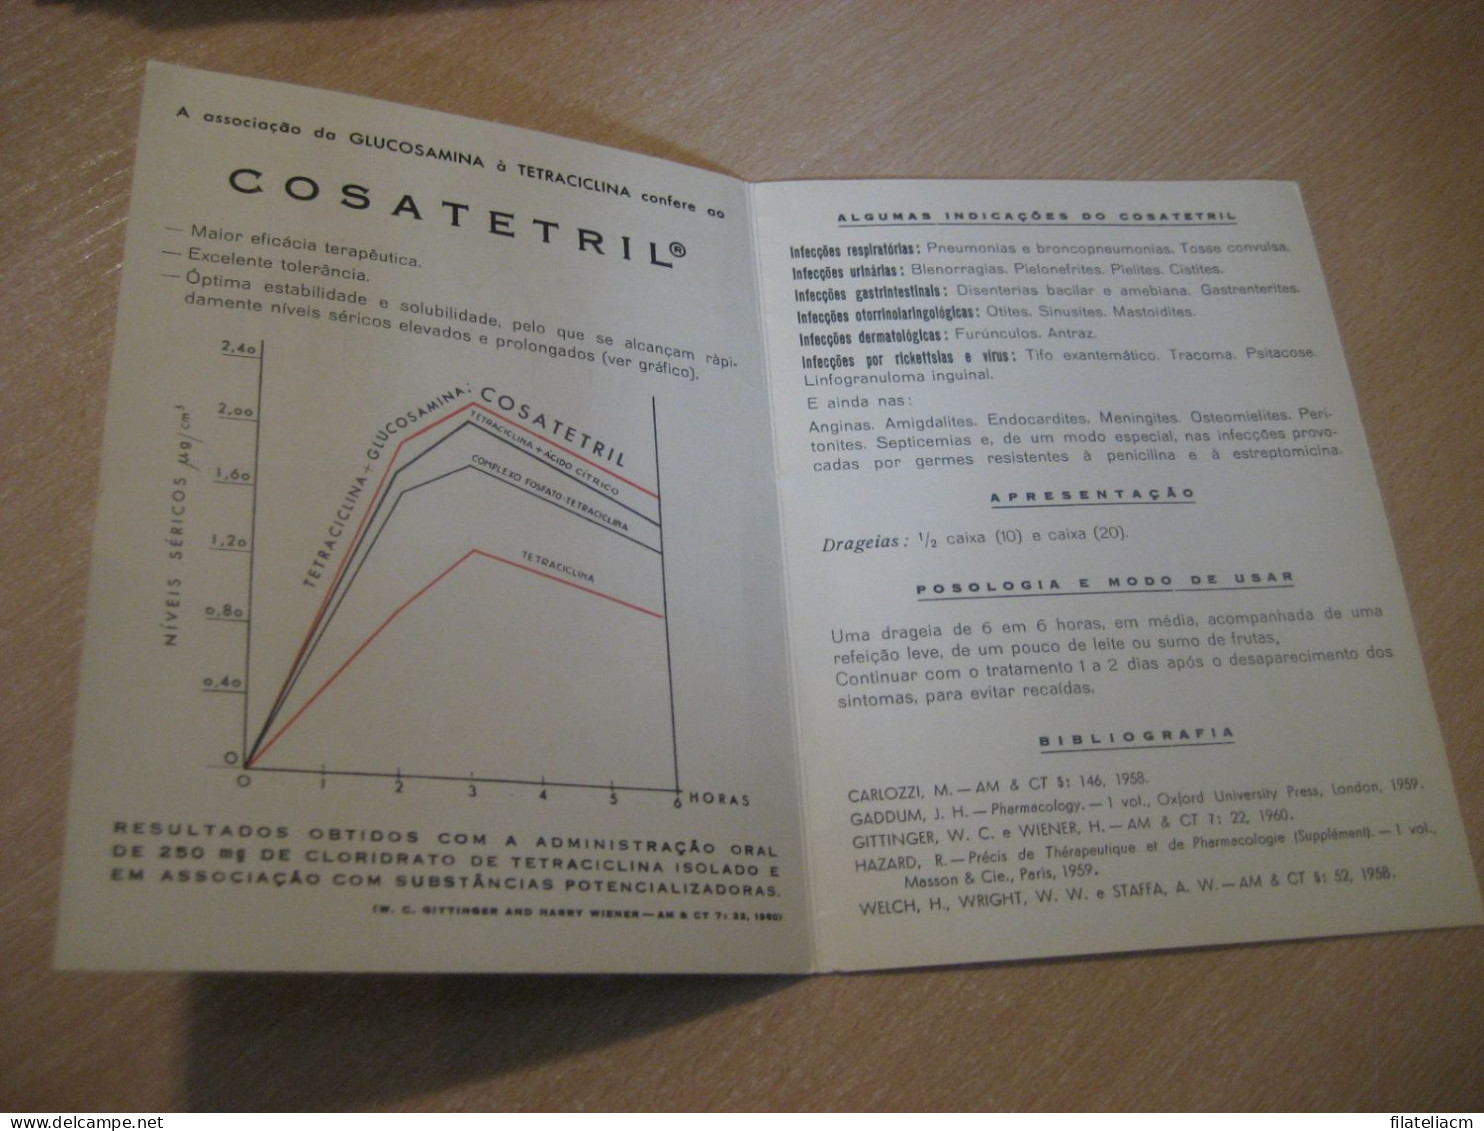 PORTO 1961 To Figueira Da Foz BIAL Cosatetril Tetraciclina Glucosamina Pharmacy Health Meter Mail Document Card PORTUGAL - Cartas & Documentos